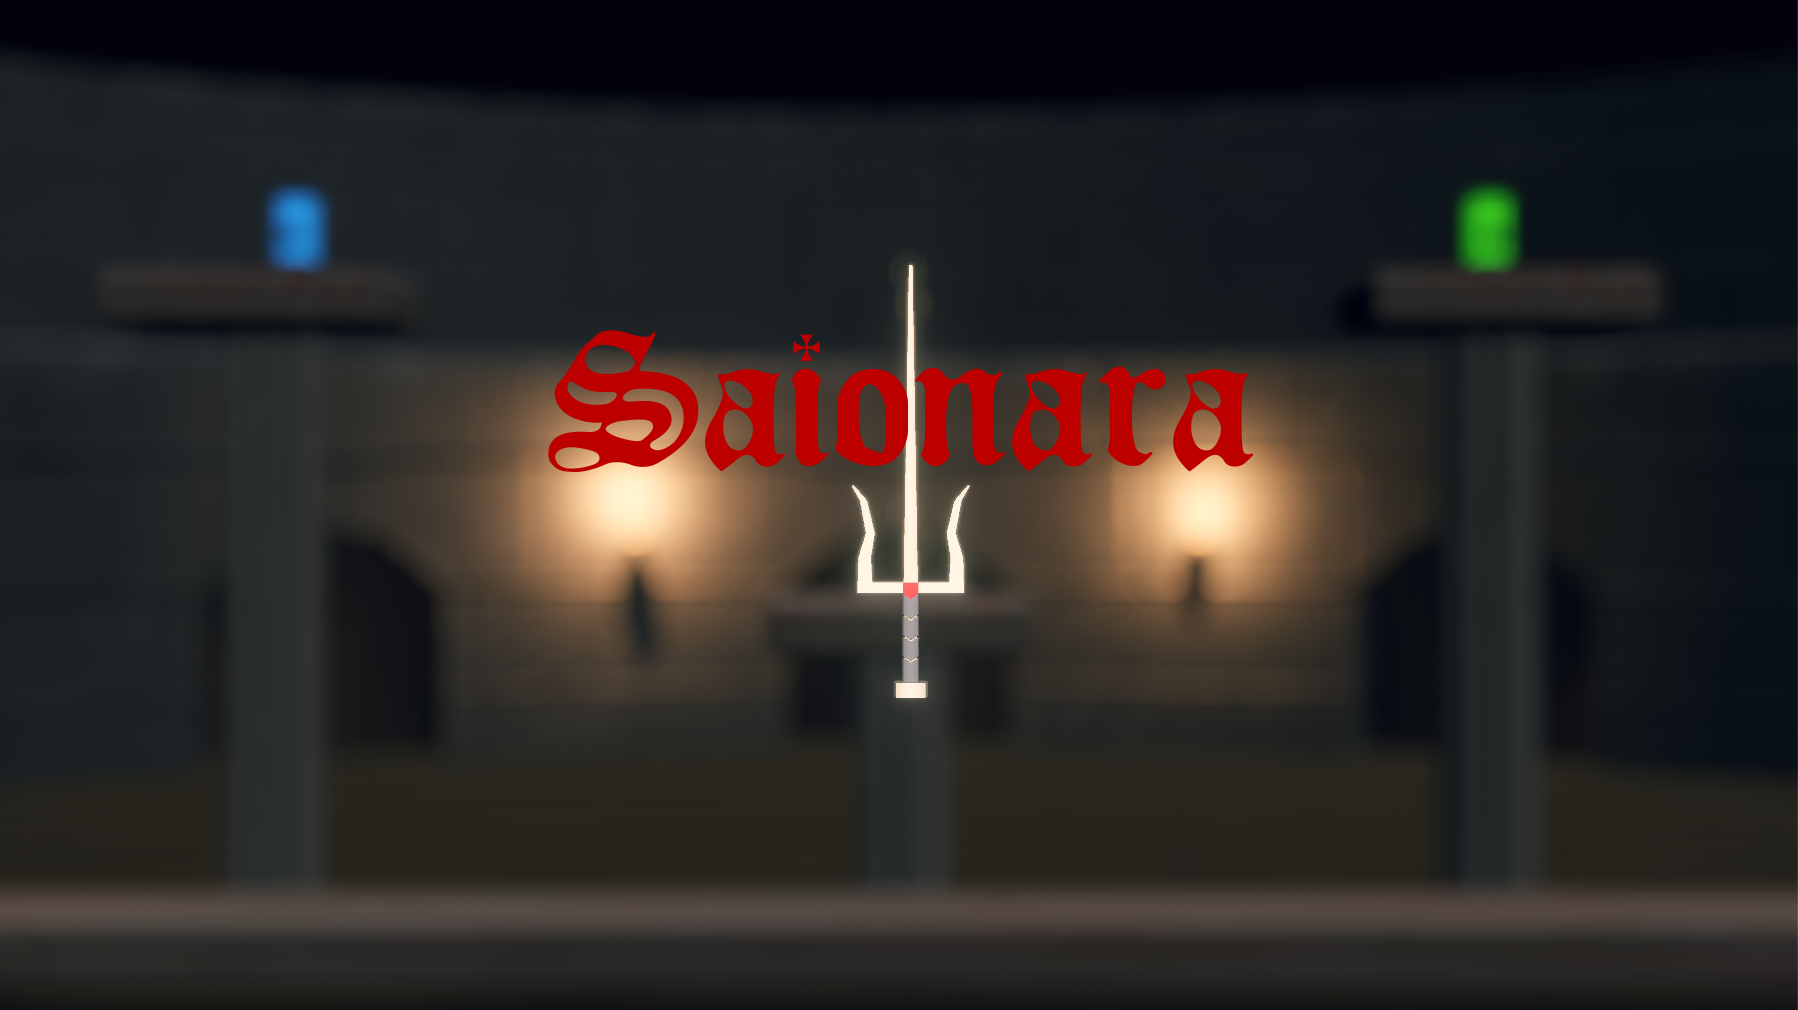 Saionara